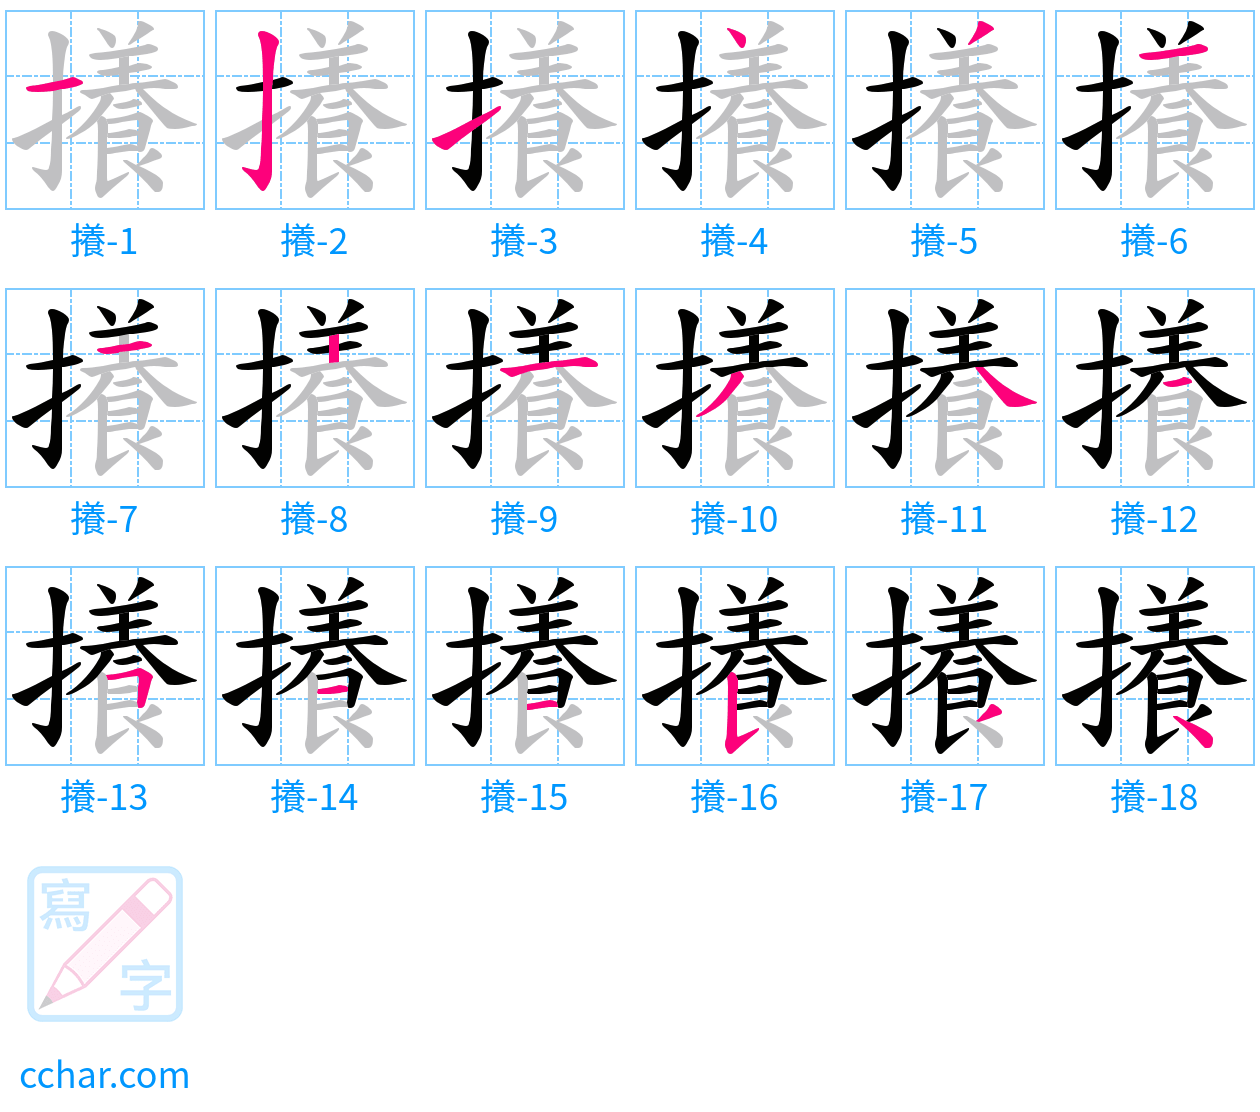 攁 stroke order step-by-step diagram